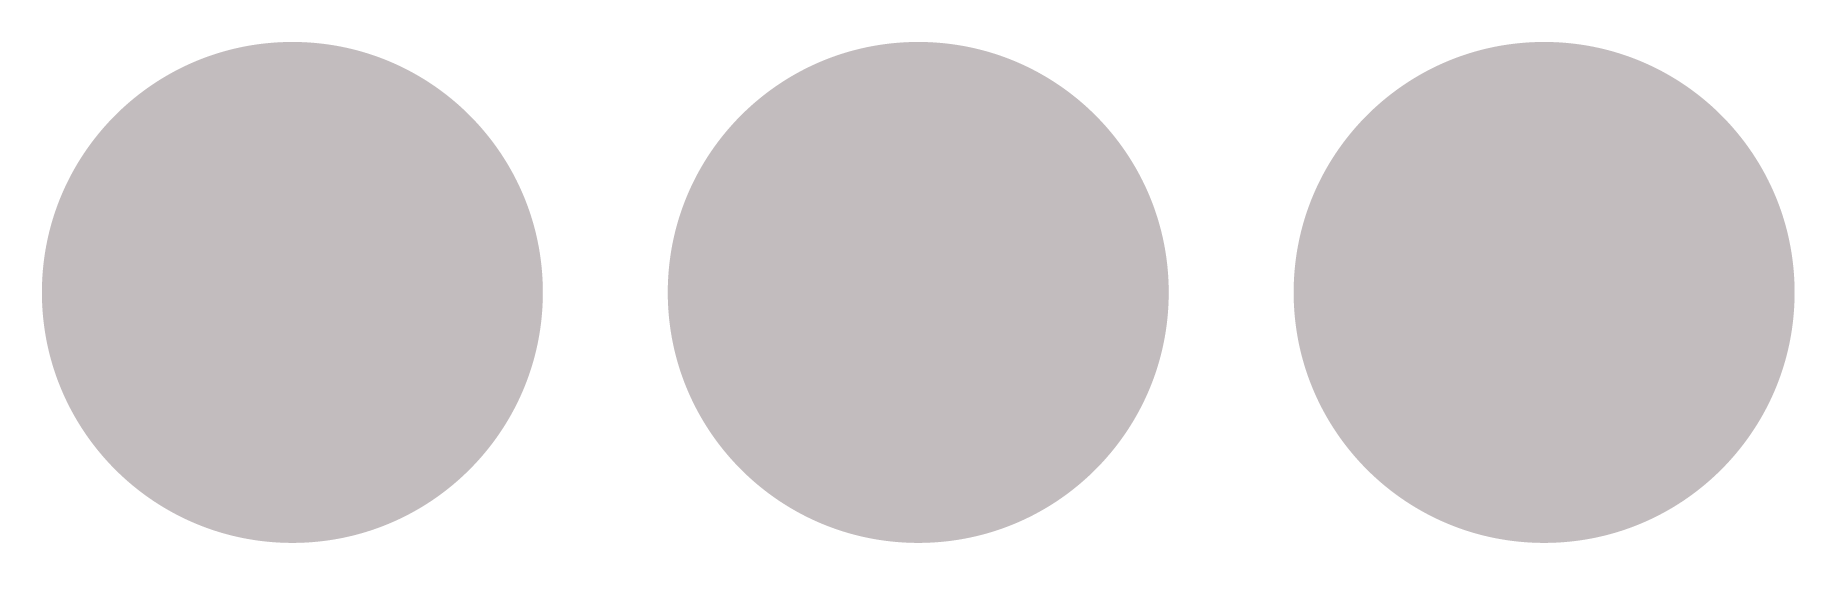 3 gray circles.